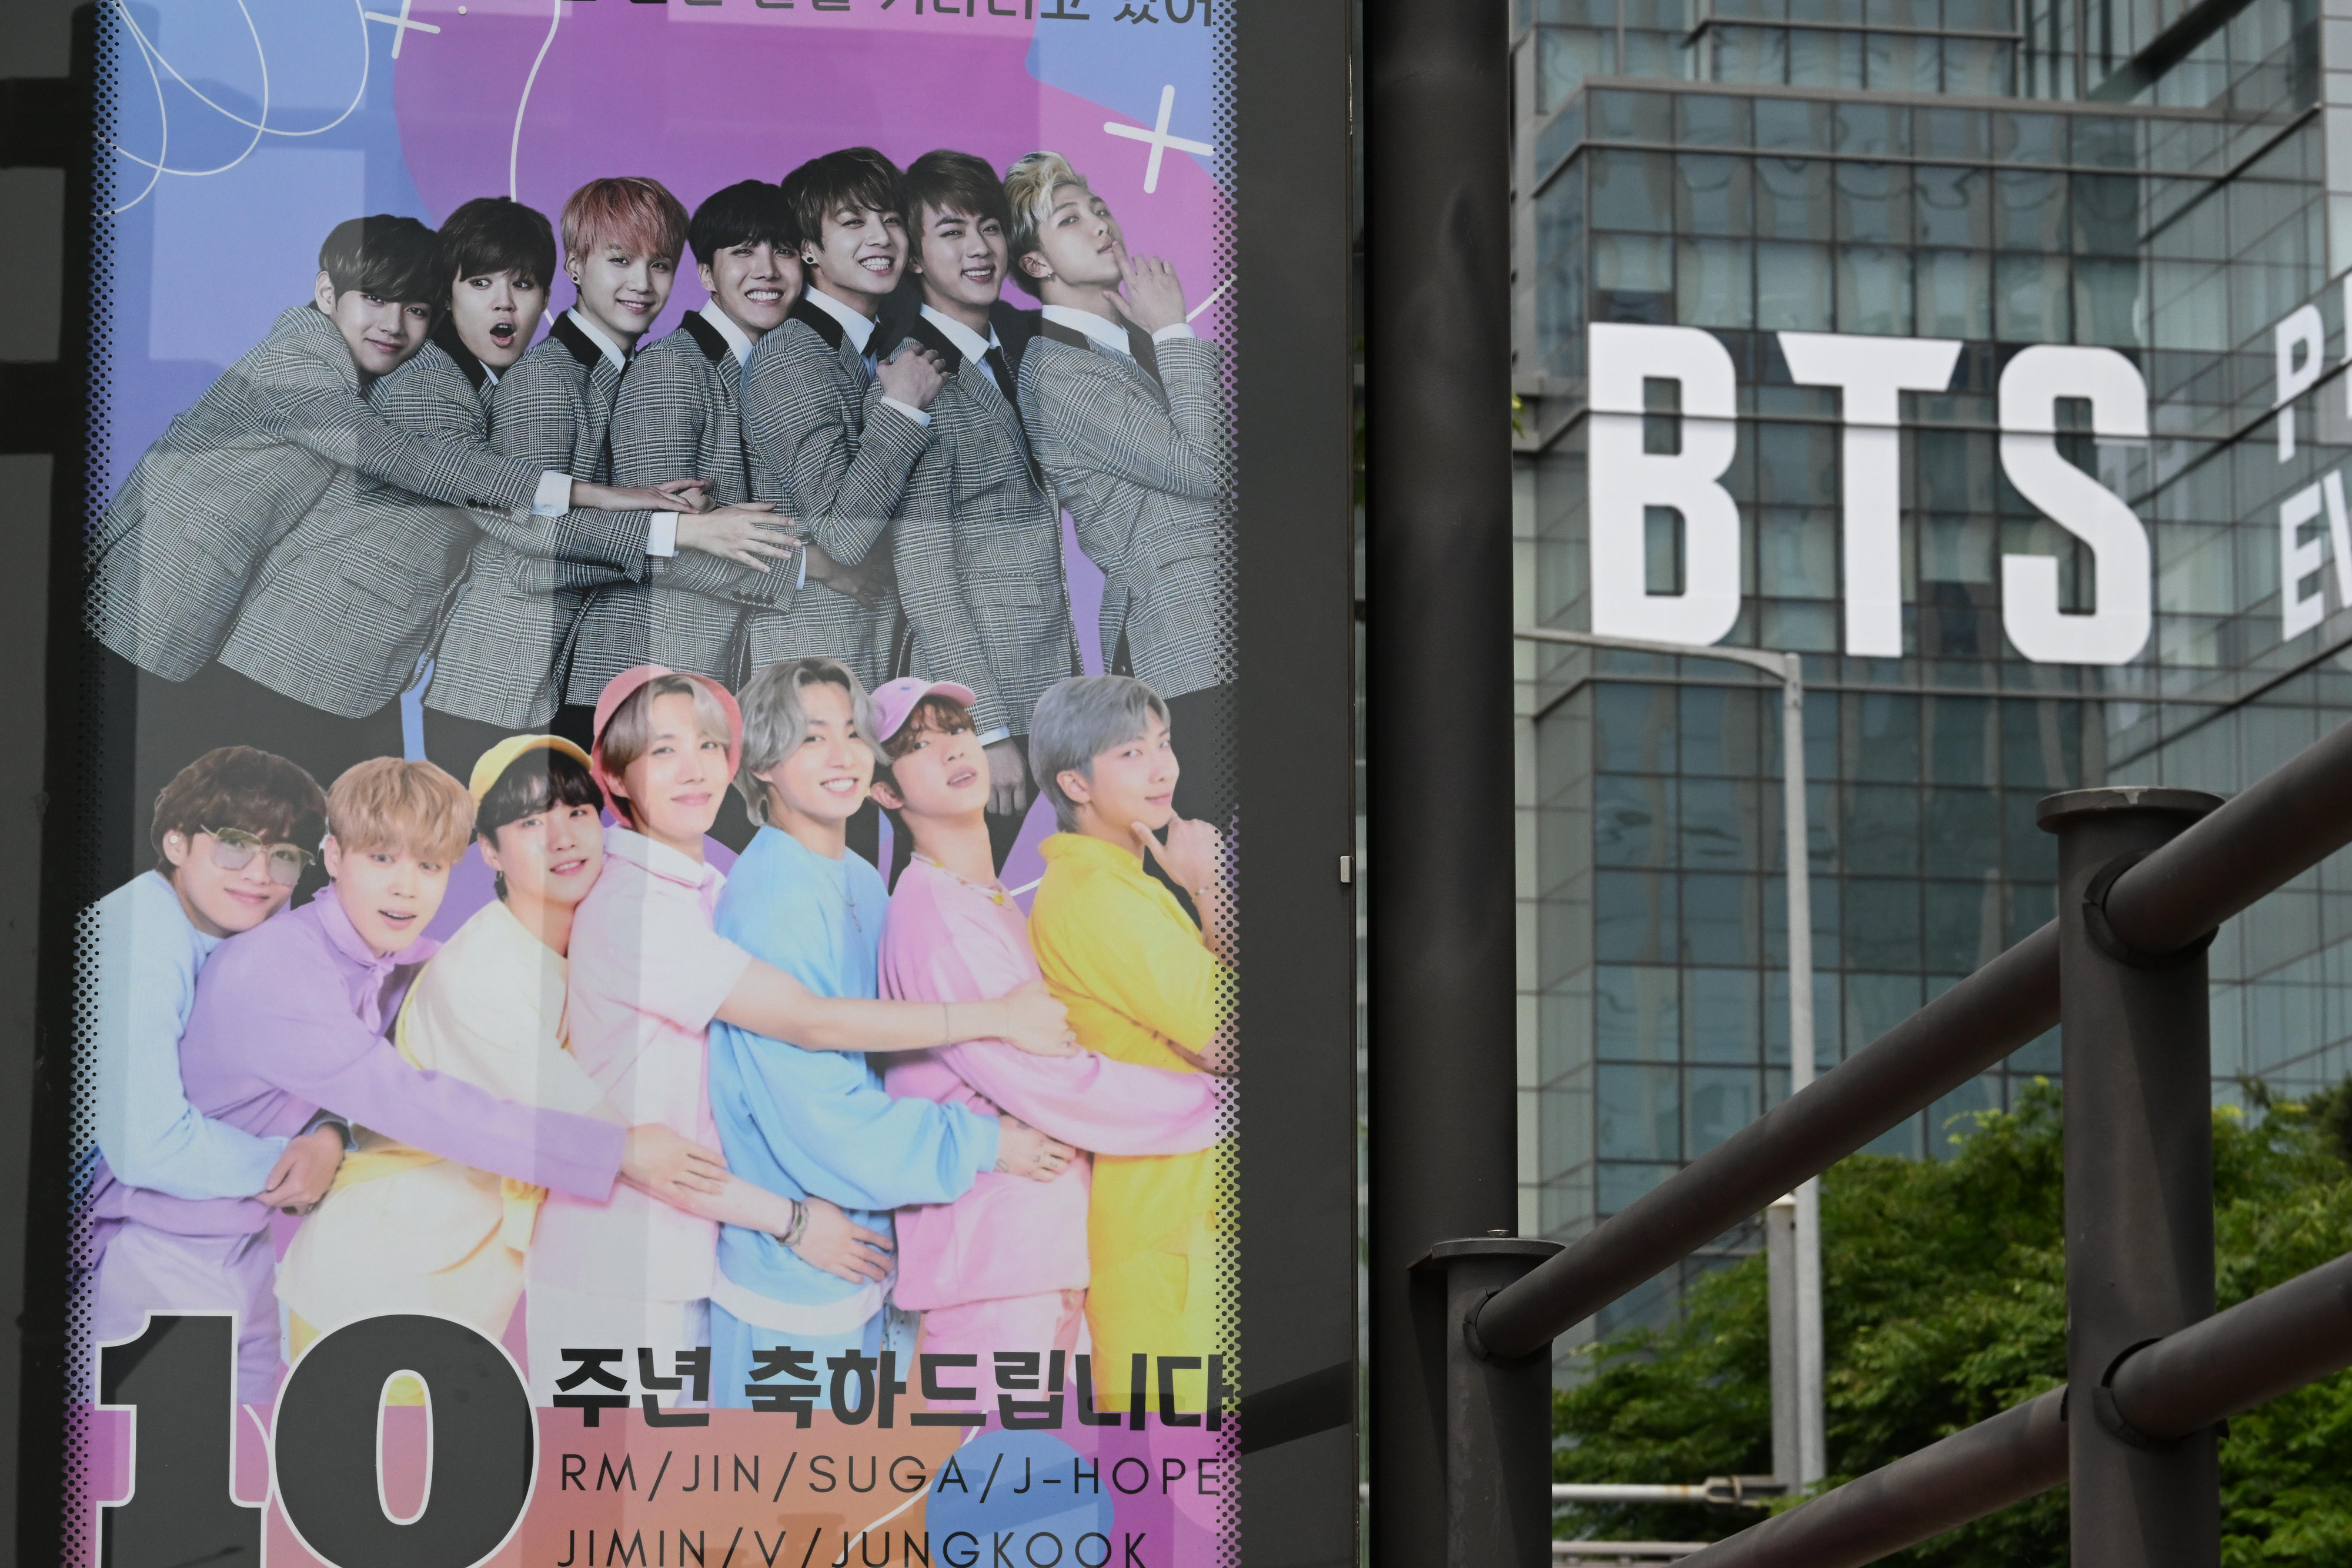 지난 12일 서울 용산구 하이브 사옥 인근 버스정거장에 방탄소년단(BTS) 데뷔 10주년을 기념하는 팬들의 축하 메시지가 걸려있다. 도준석 기자